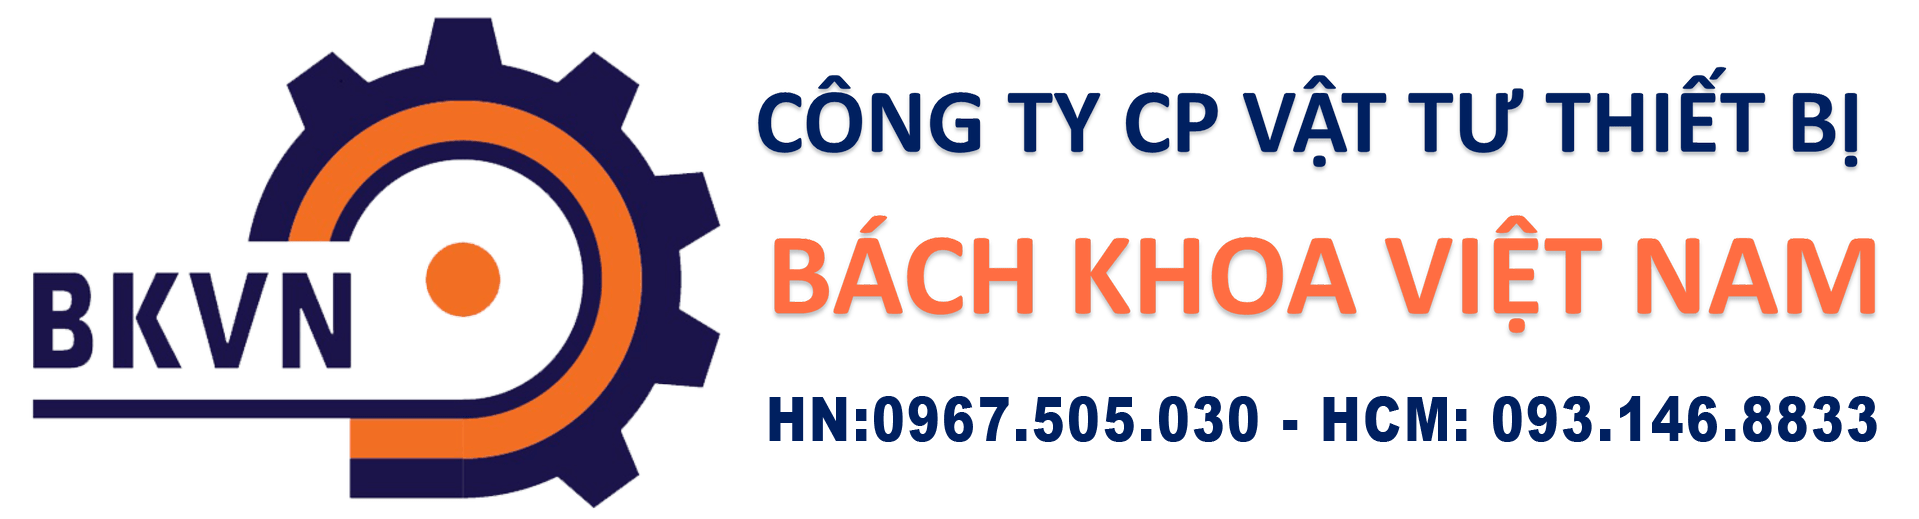 Công ty BKVN là nơi chuyên cung cấp thang máng cáp chất lượng uy tín hàng đầu Việt Nam